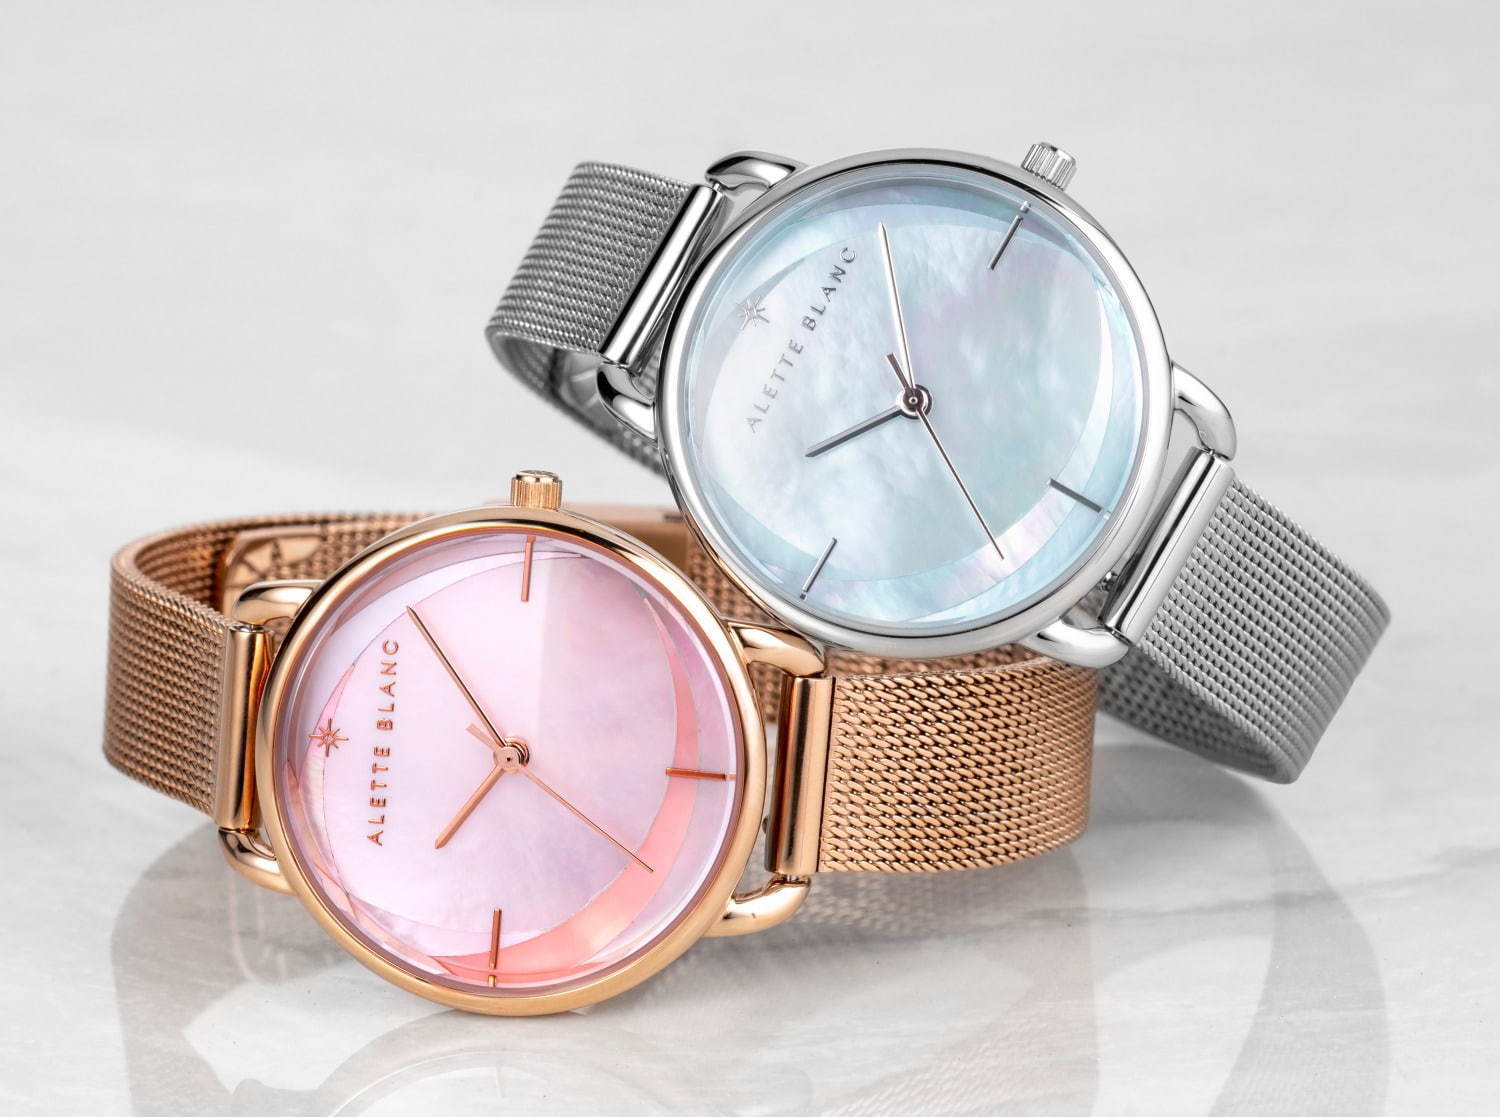 アレットブランの新作腕時計「ブリーズ コレクション」3色パールで“そよかぜ”を表現 コピー